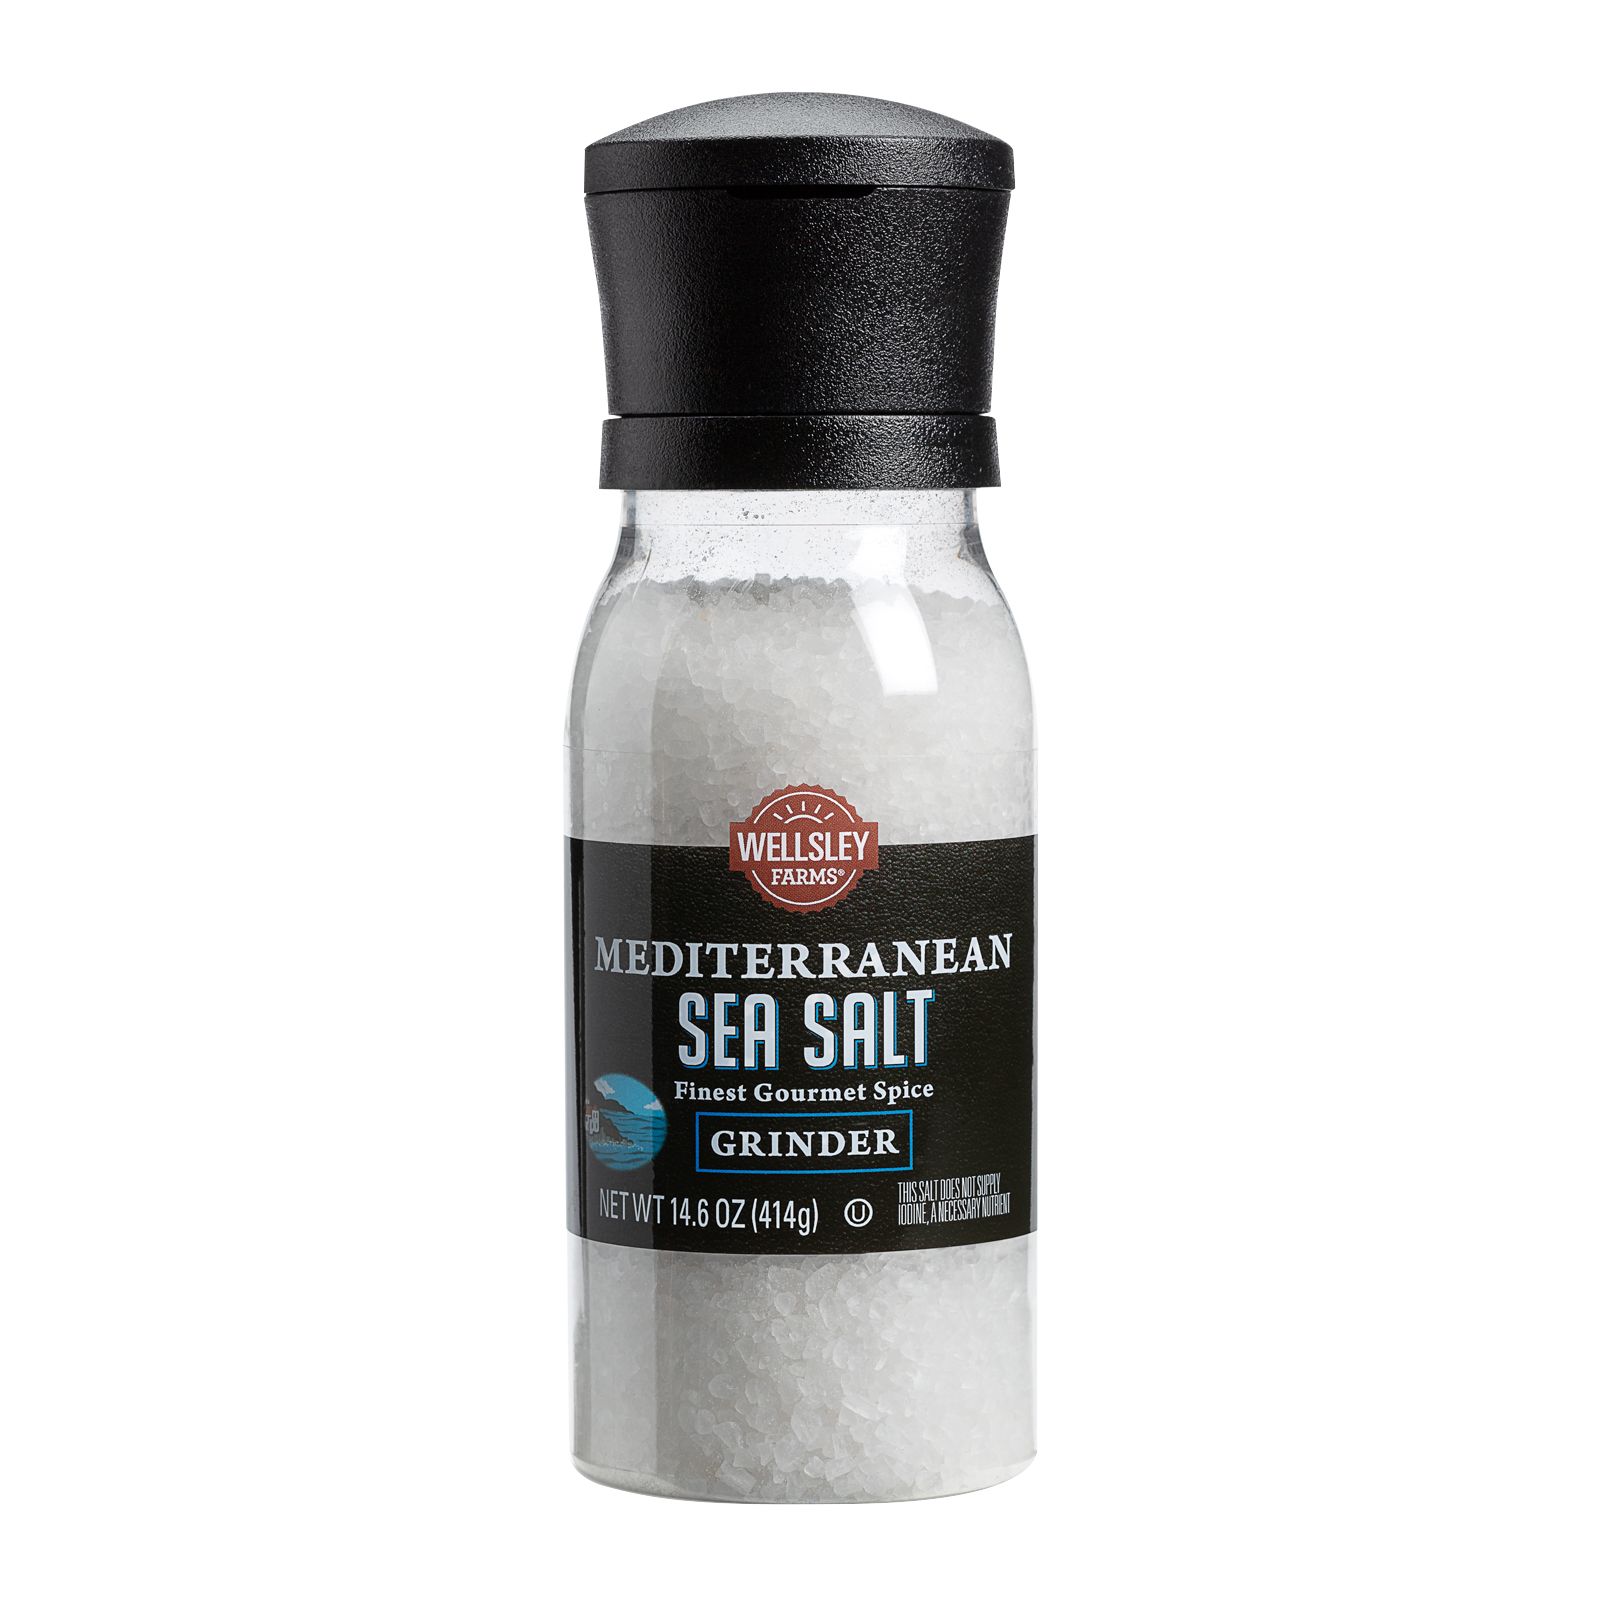 Seasoning Bundle - 2 Items: McCormick Sea Salt Grinder 2.12 Oz. & Black  Peppercorn Grinder 1.0 Oz